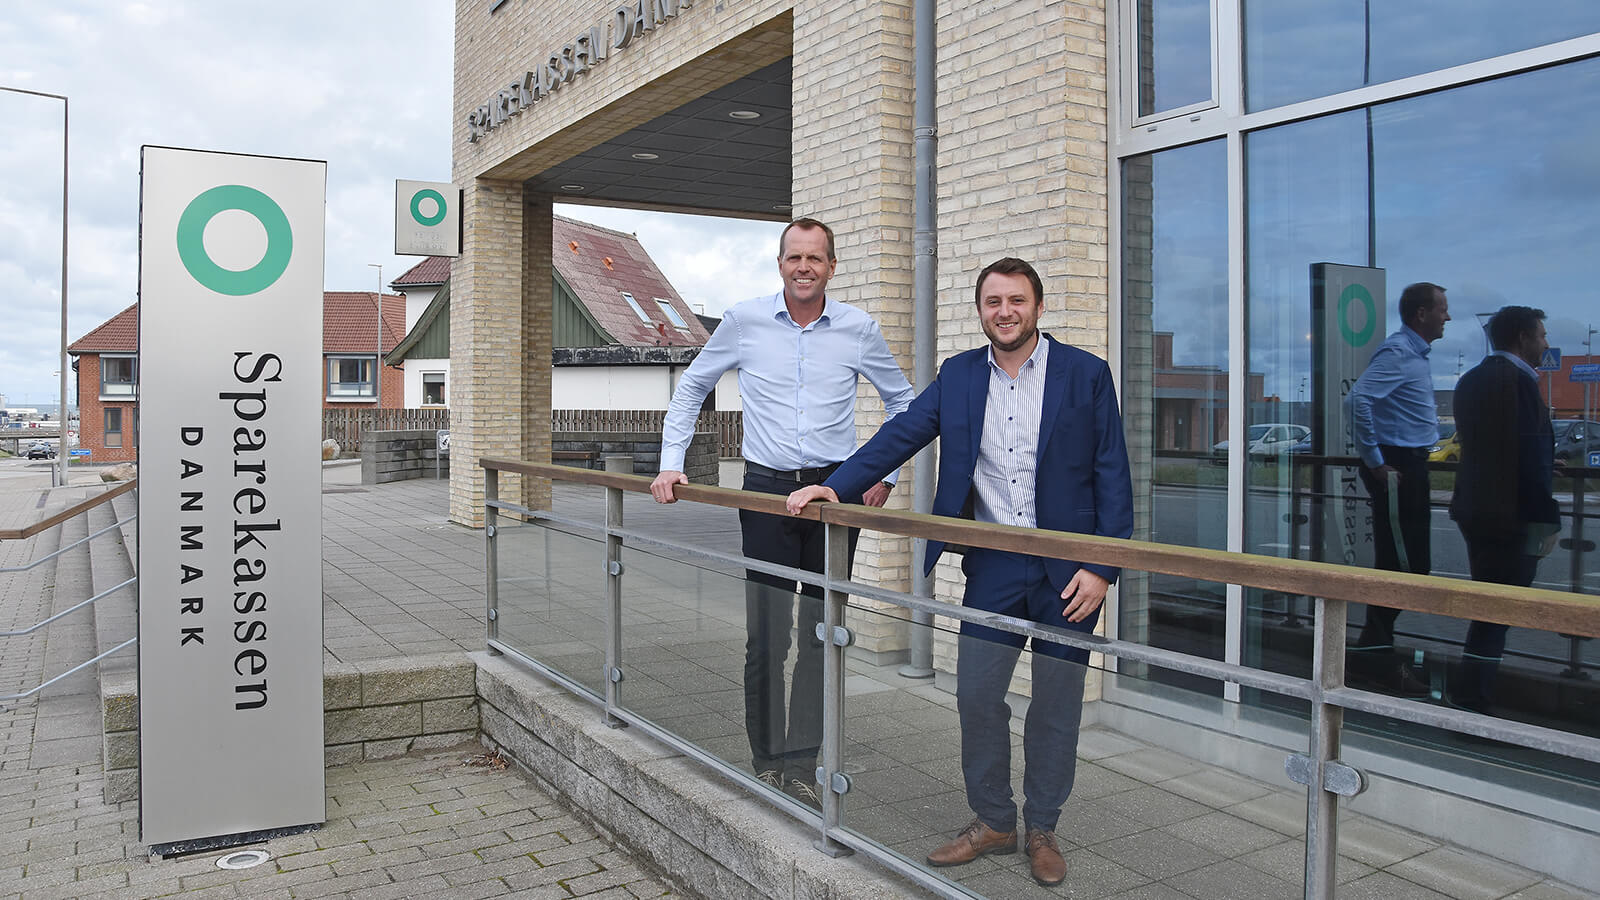 Søren Kjær Christensen (til højre), der er erhvervsdirektør i sparekassens Region Vestvendsyssel, søger lige nu en afdelingsdirektør til den kommende erhvervsafdeling i Hirtshals. Den kommer til at dele lokaler med sparekassens nuværende afdeling i byen, hvor Rene Jensen er afdelingsdirektør.